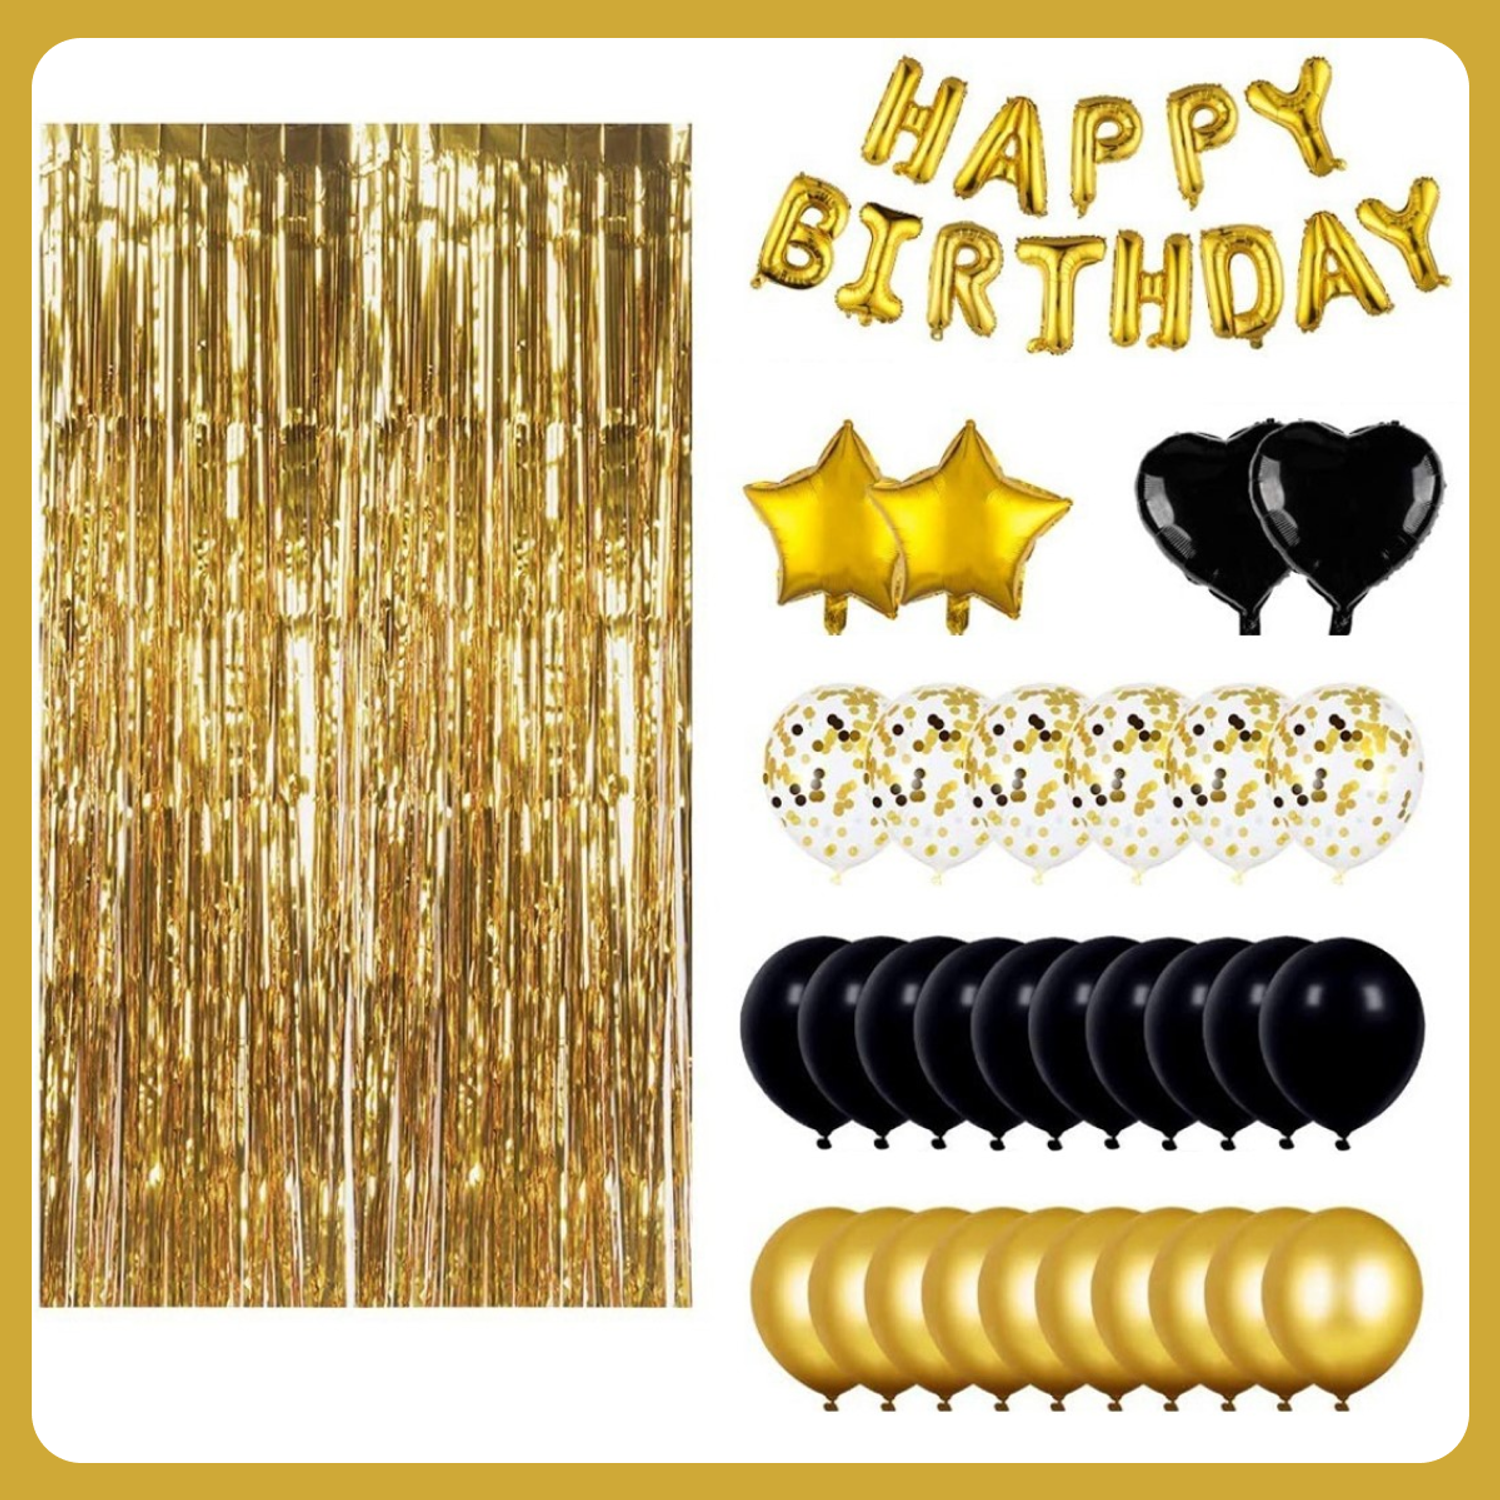 Воздушные шары набор Мишины шарики для фотозоны на день рождения с фольгированными буквами Happy Birthday - фото 4